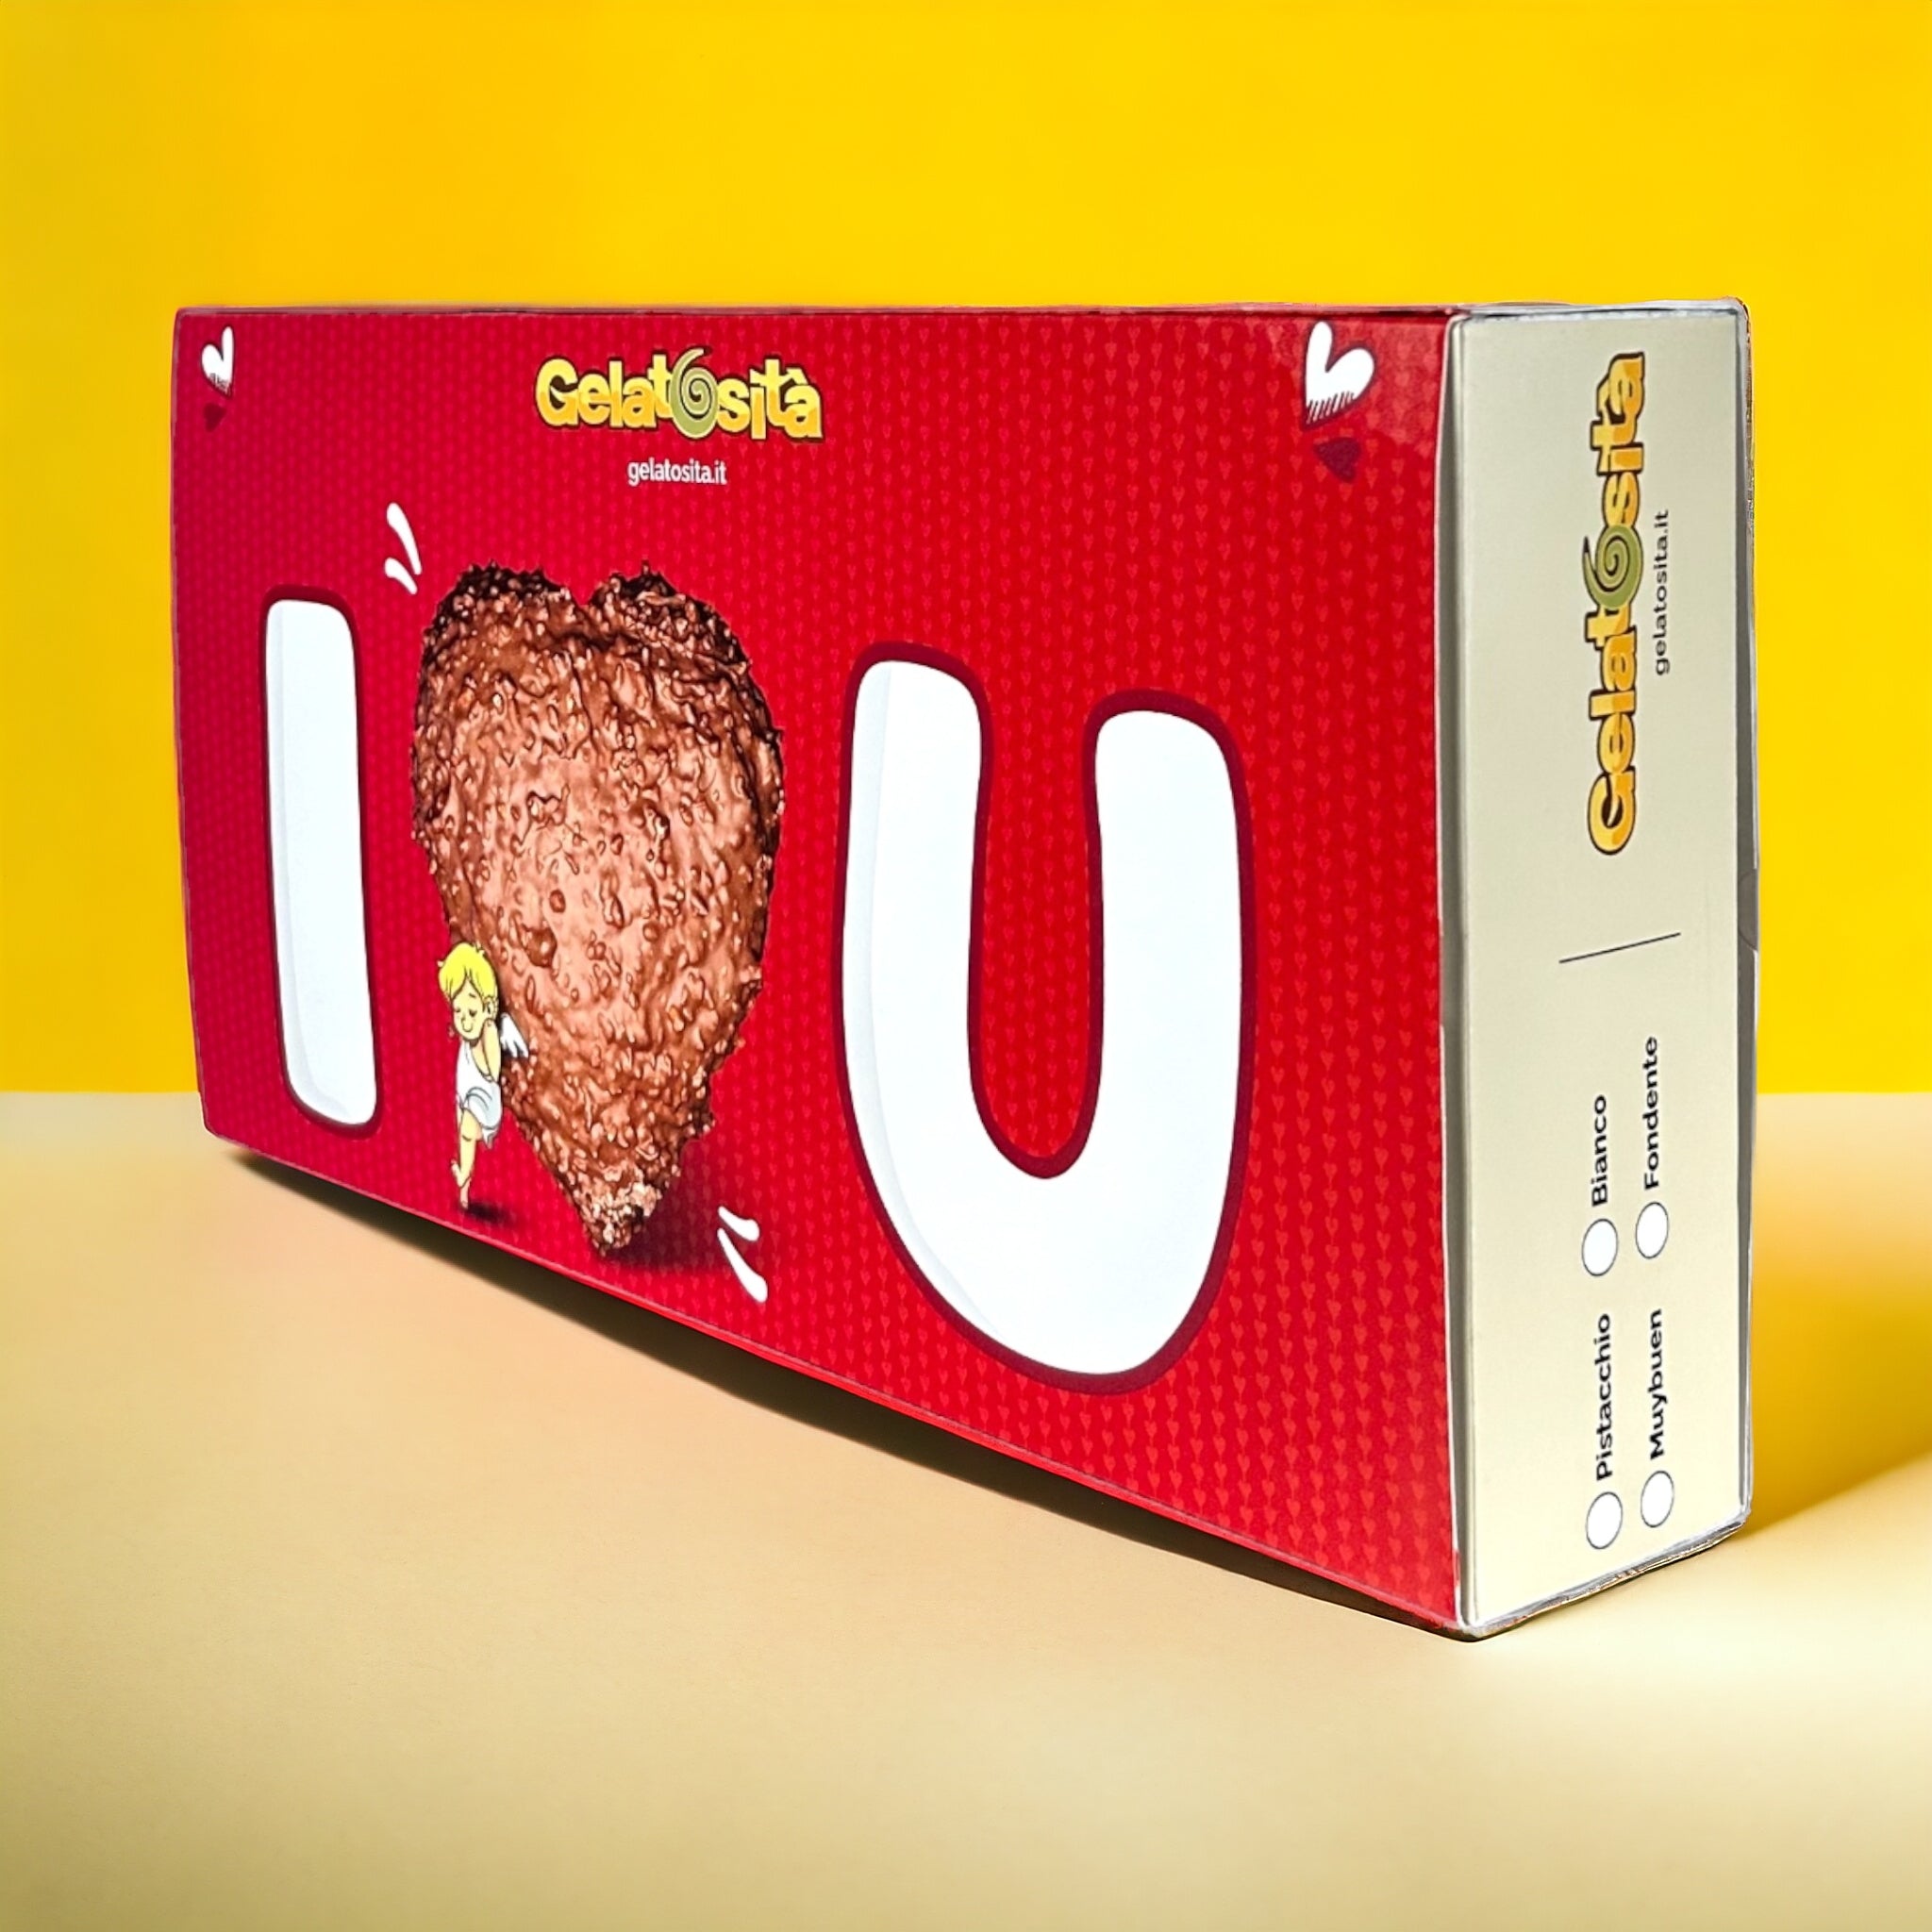 BOX MAMMA, I-LOVE-YOU! Cuore Bianco ripieno Crema Bianca + 5 creme + 2 cioccolatini + rosa e dedica (Ed. Limitata)